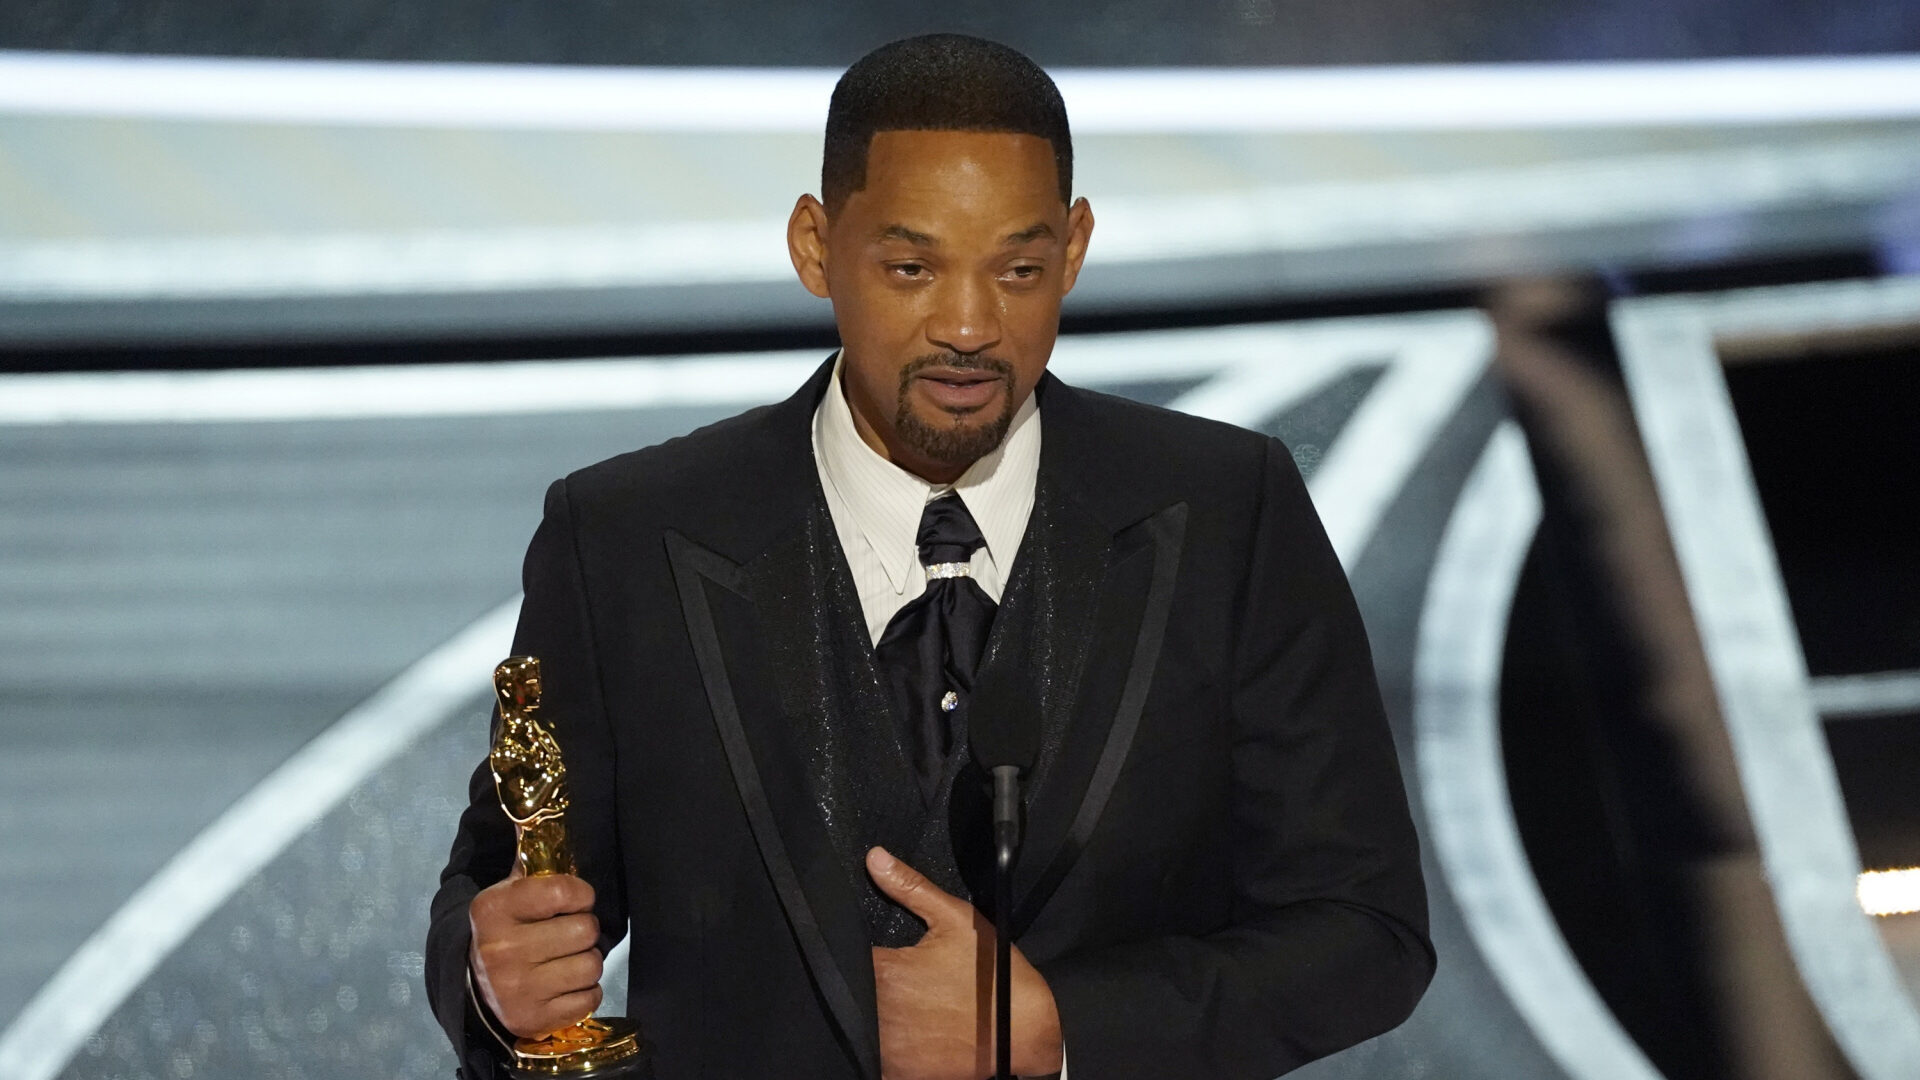 Premios Oscar: La Academia de Hollywood pidió a Will Smith que abandonara la gala, pero él se negó